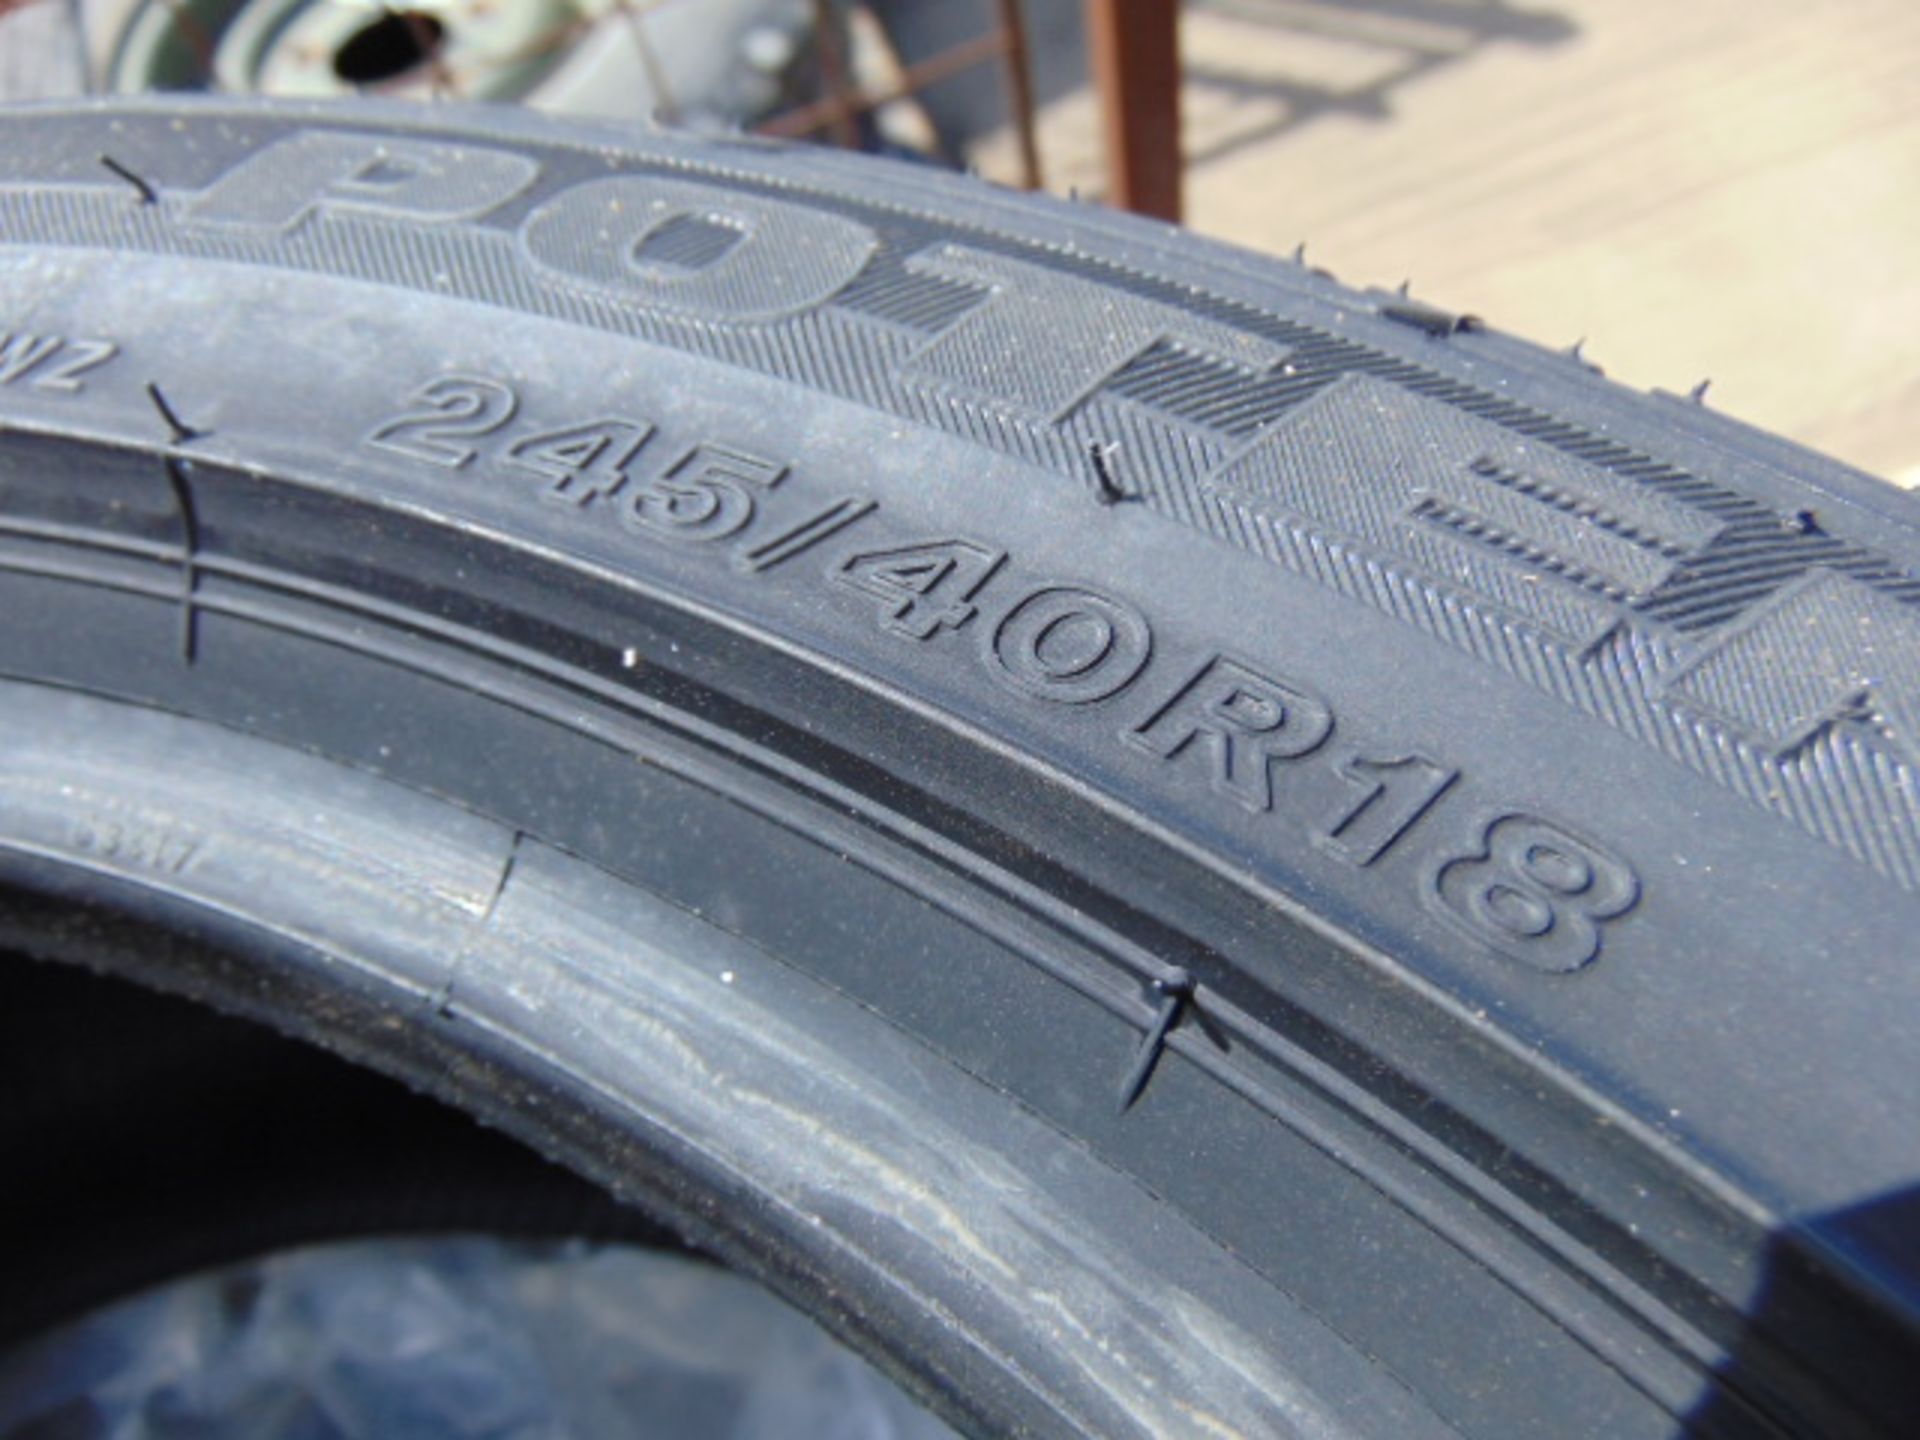 4 x Bridgestone Potenza 245/40 R18 97Y XL Tyres - Image 7 of 8